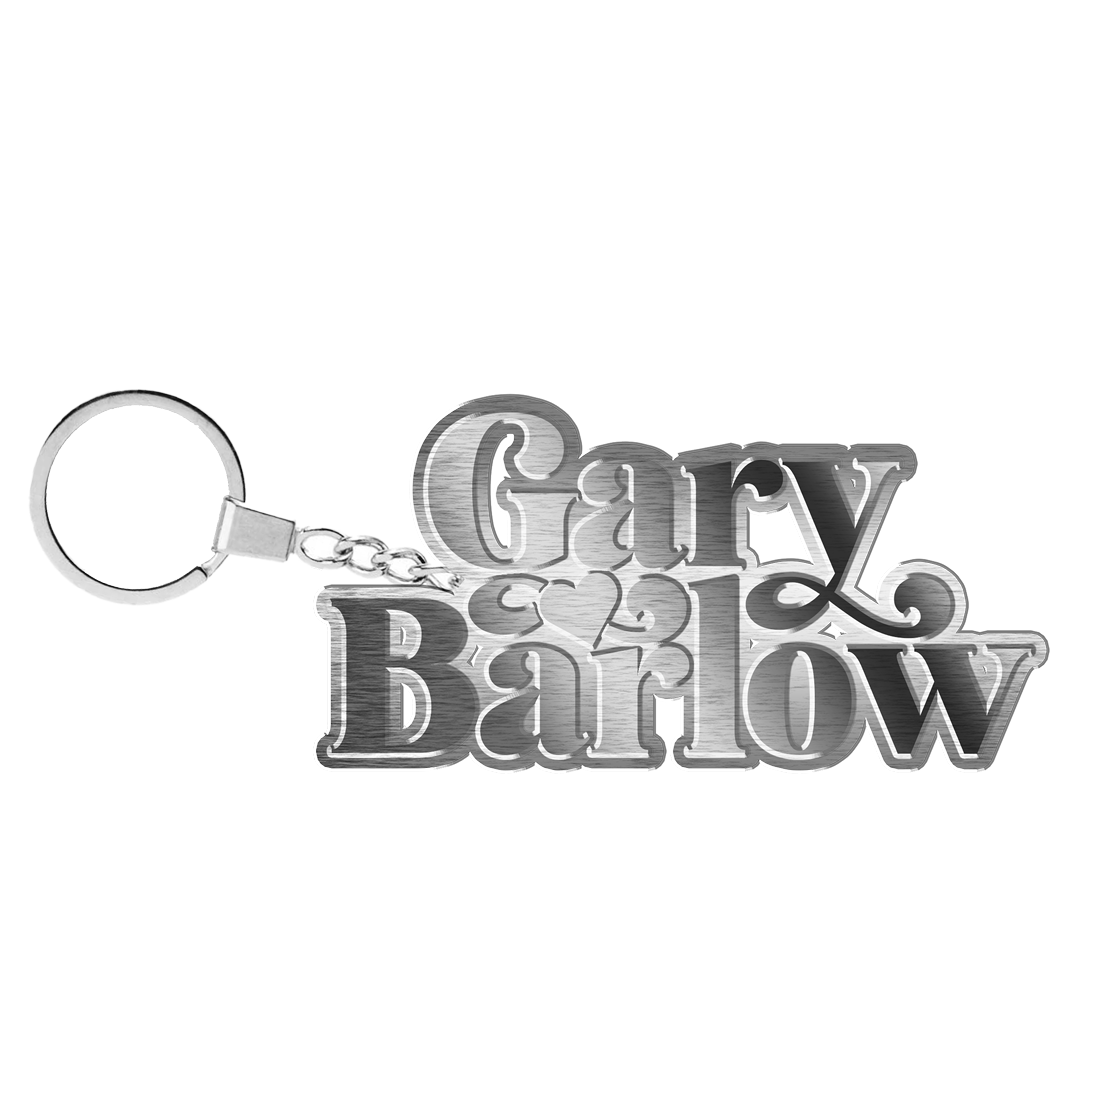 Gary Barlow - Heart Keychain